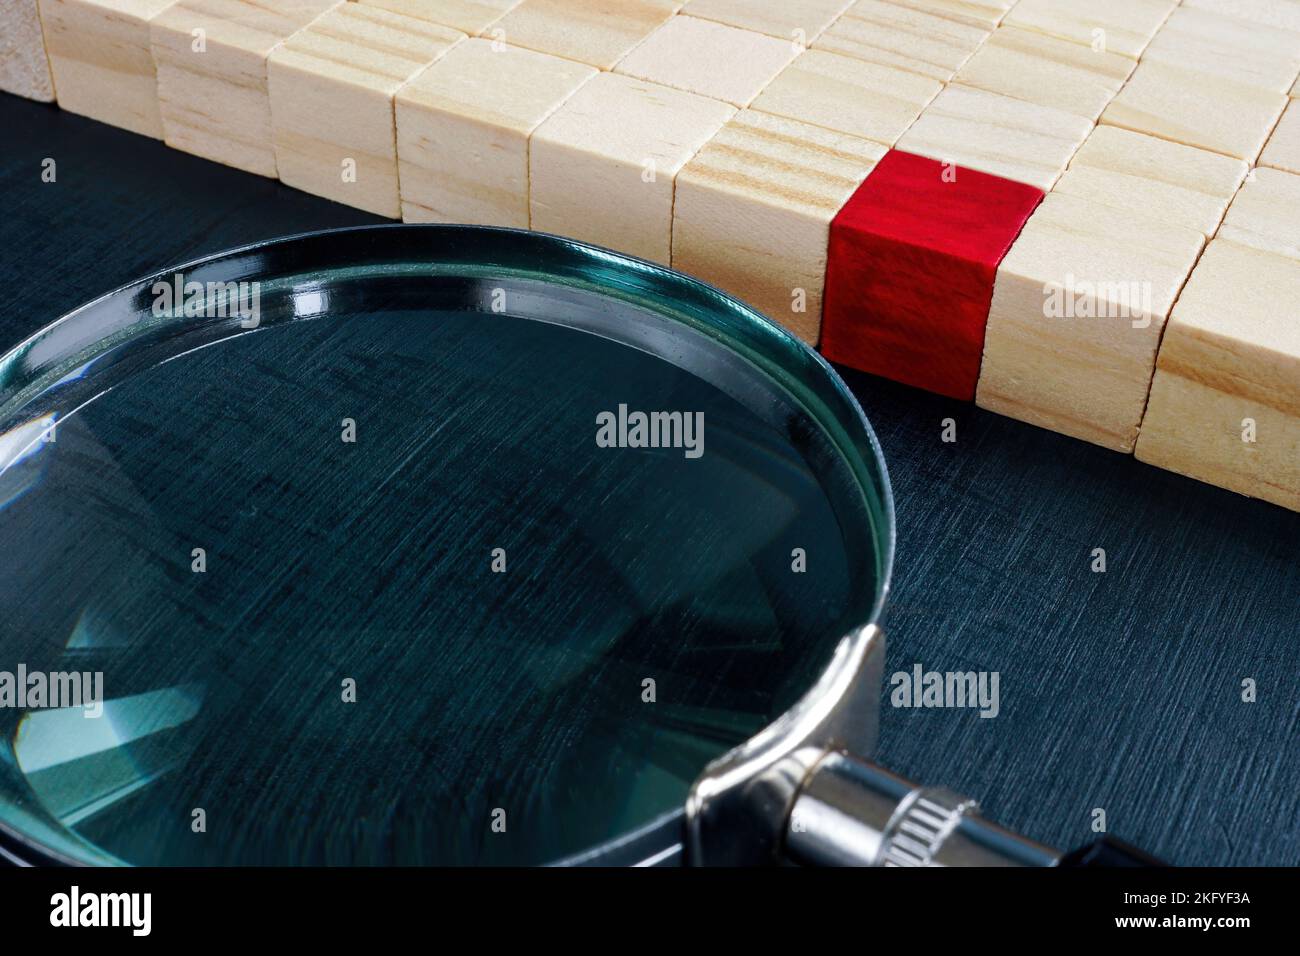 Cubetti di legno e uno rosso accanto a una lente d'ingrandimento. Concetto di acquisizione di talenti. Foto Stock